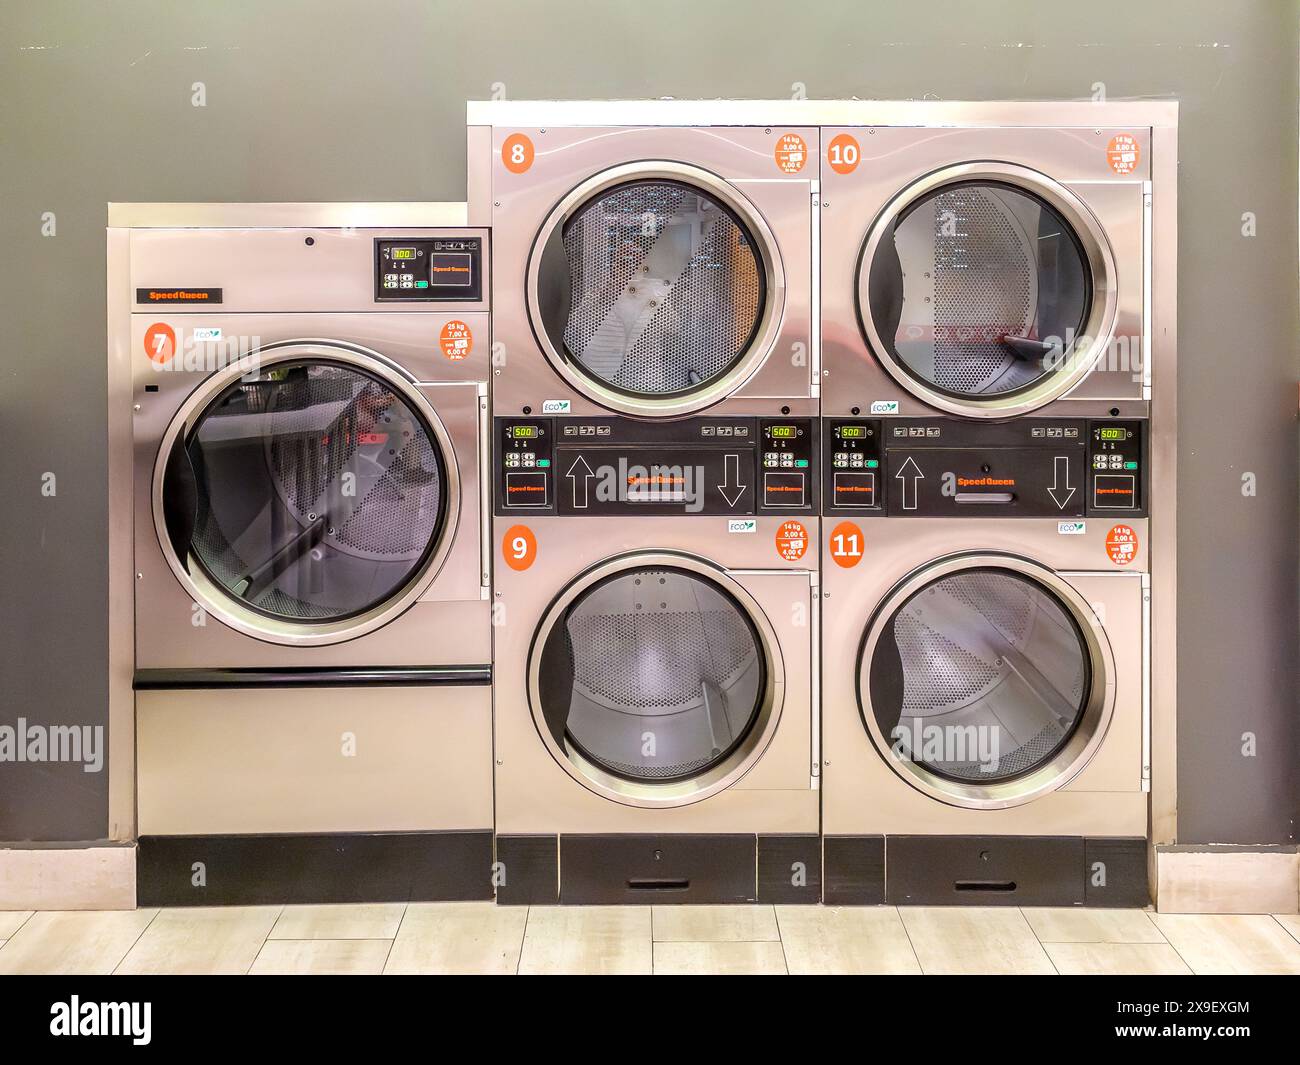 Sèche-linge industriel avec panneaux de commande numériques dans une laverie automatique en libre-service, aligné et numéroté. Banque D'Images